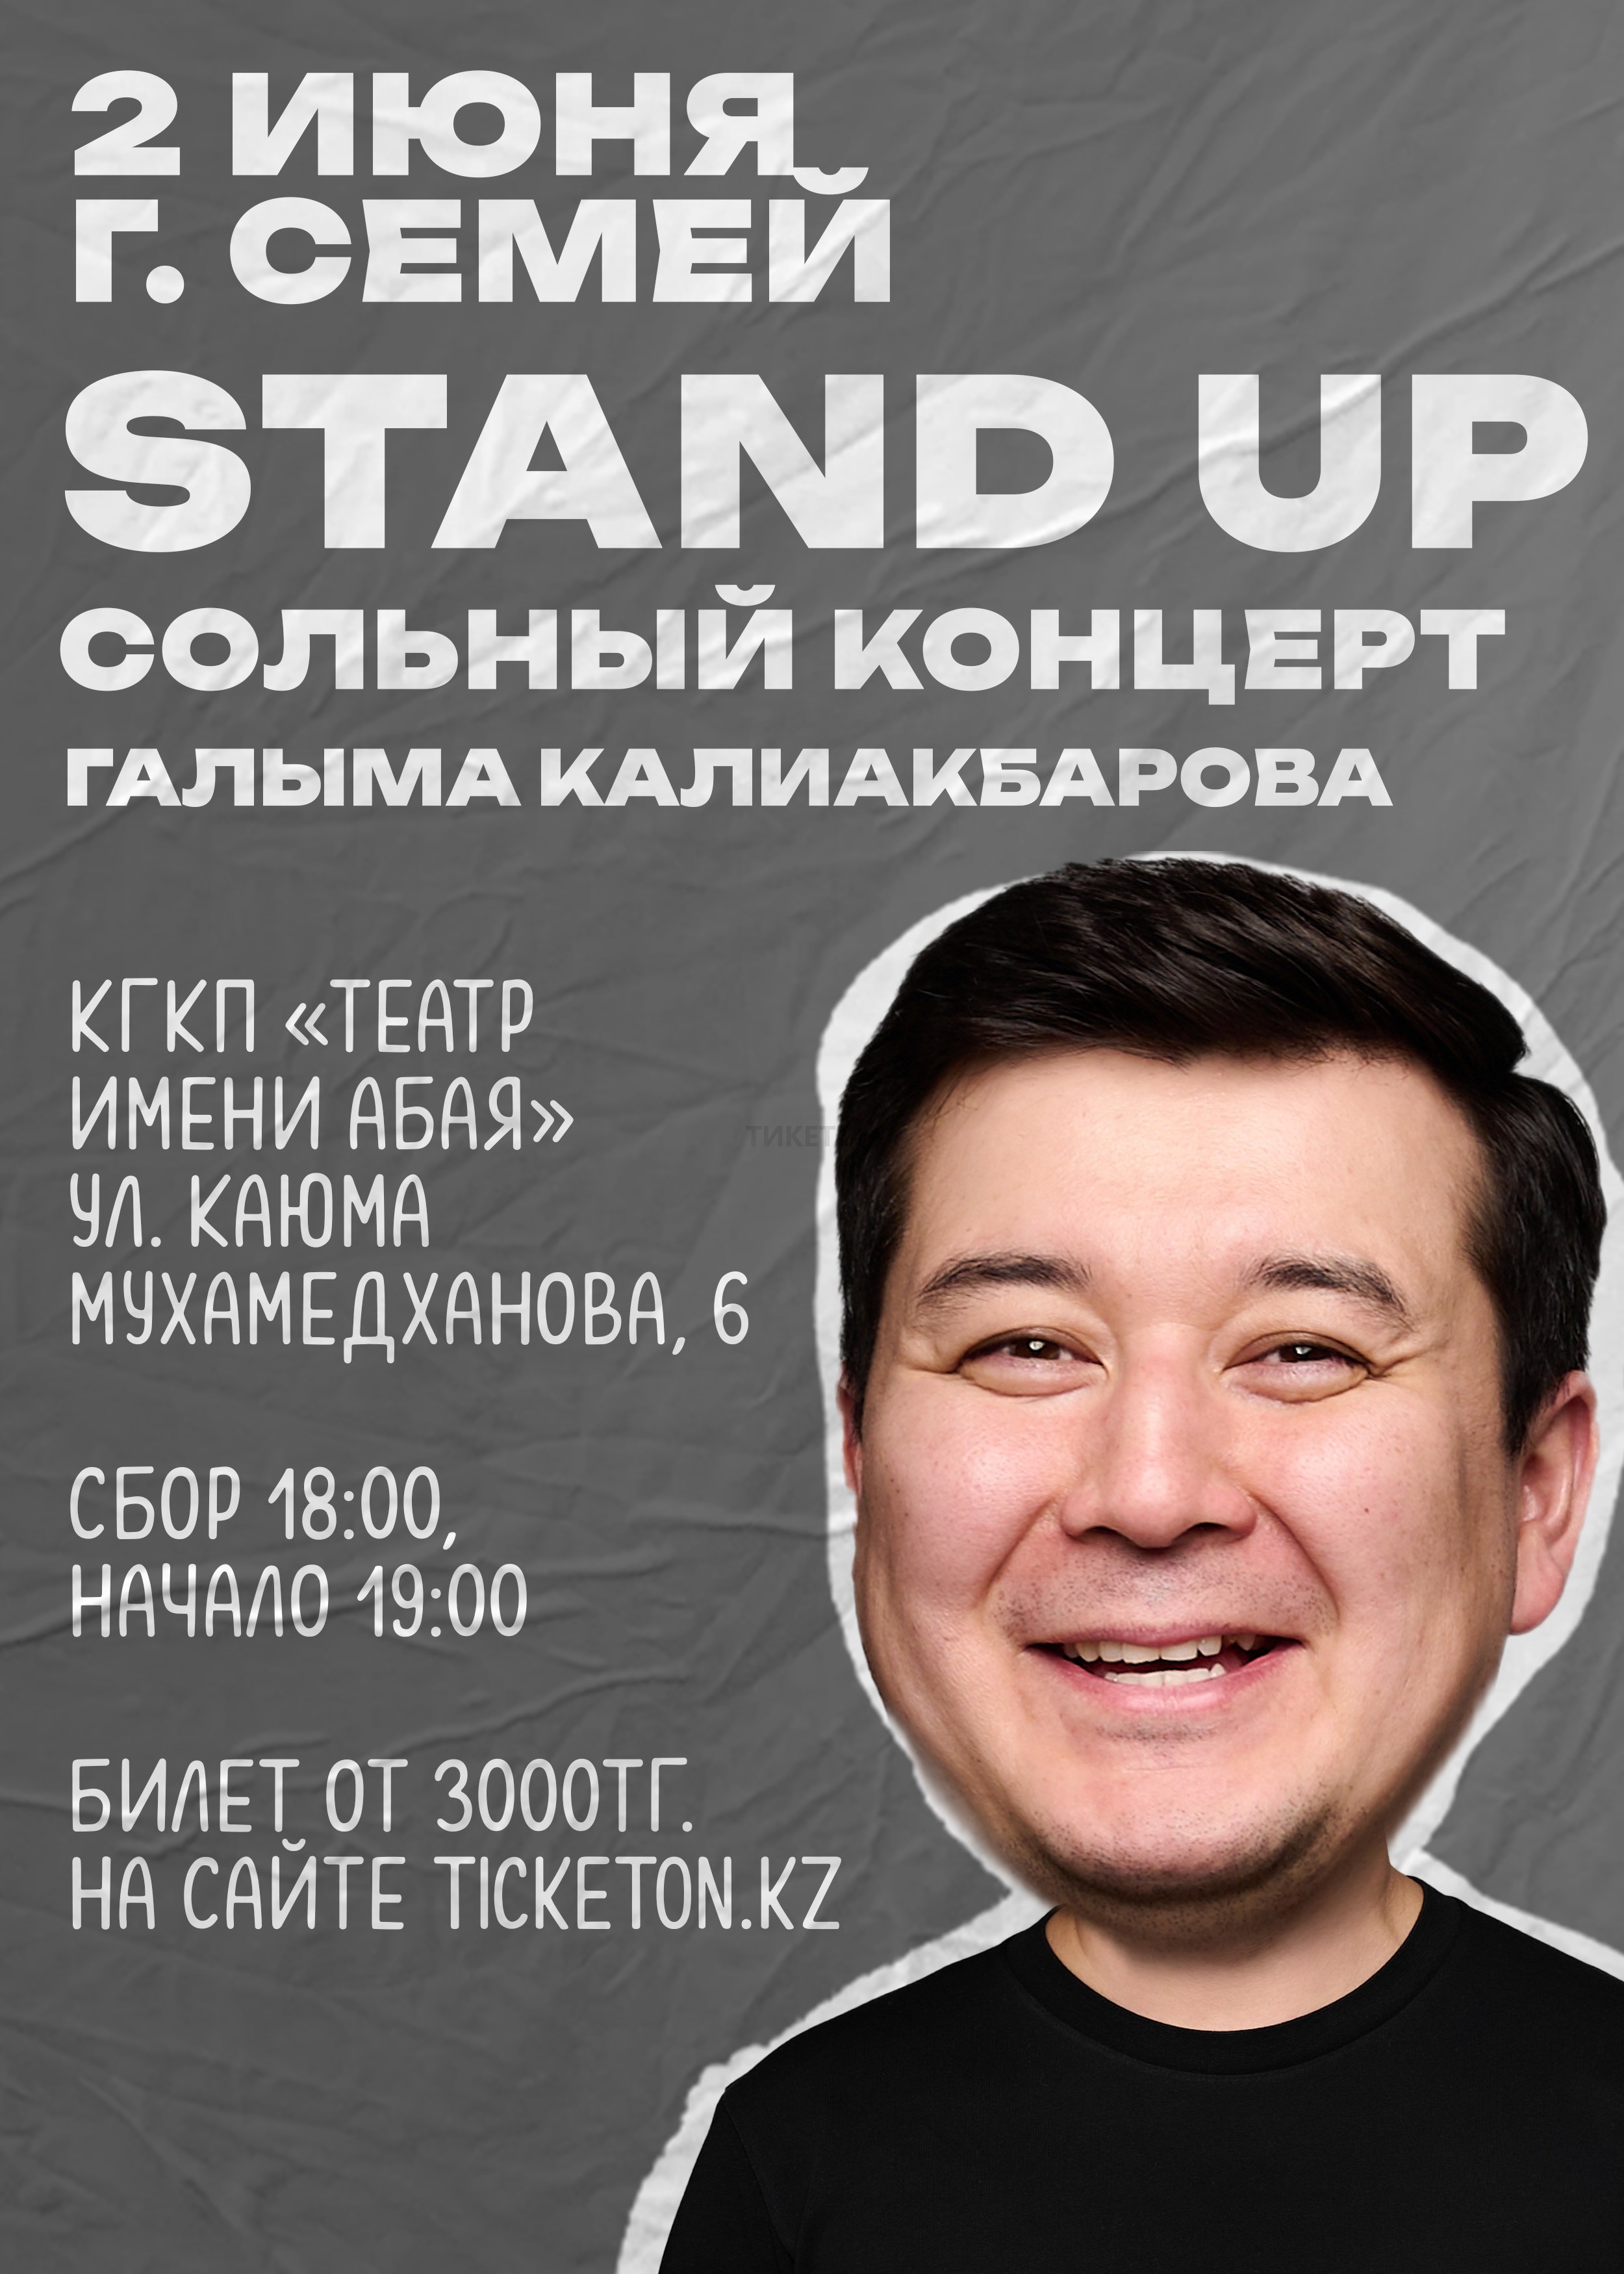 Stand Up сольный концерт Галыма Калиакбарова в городе Усть-Каменогорск